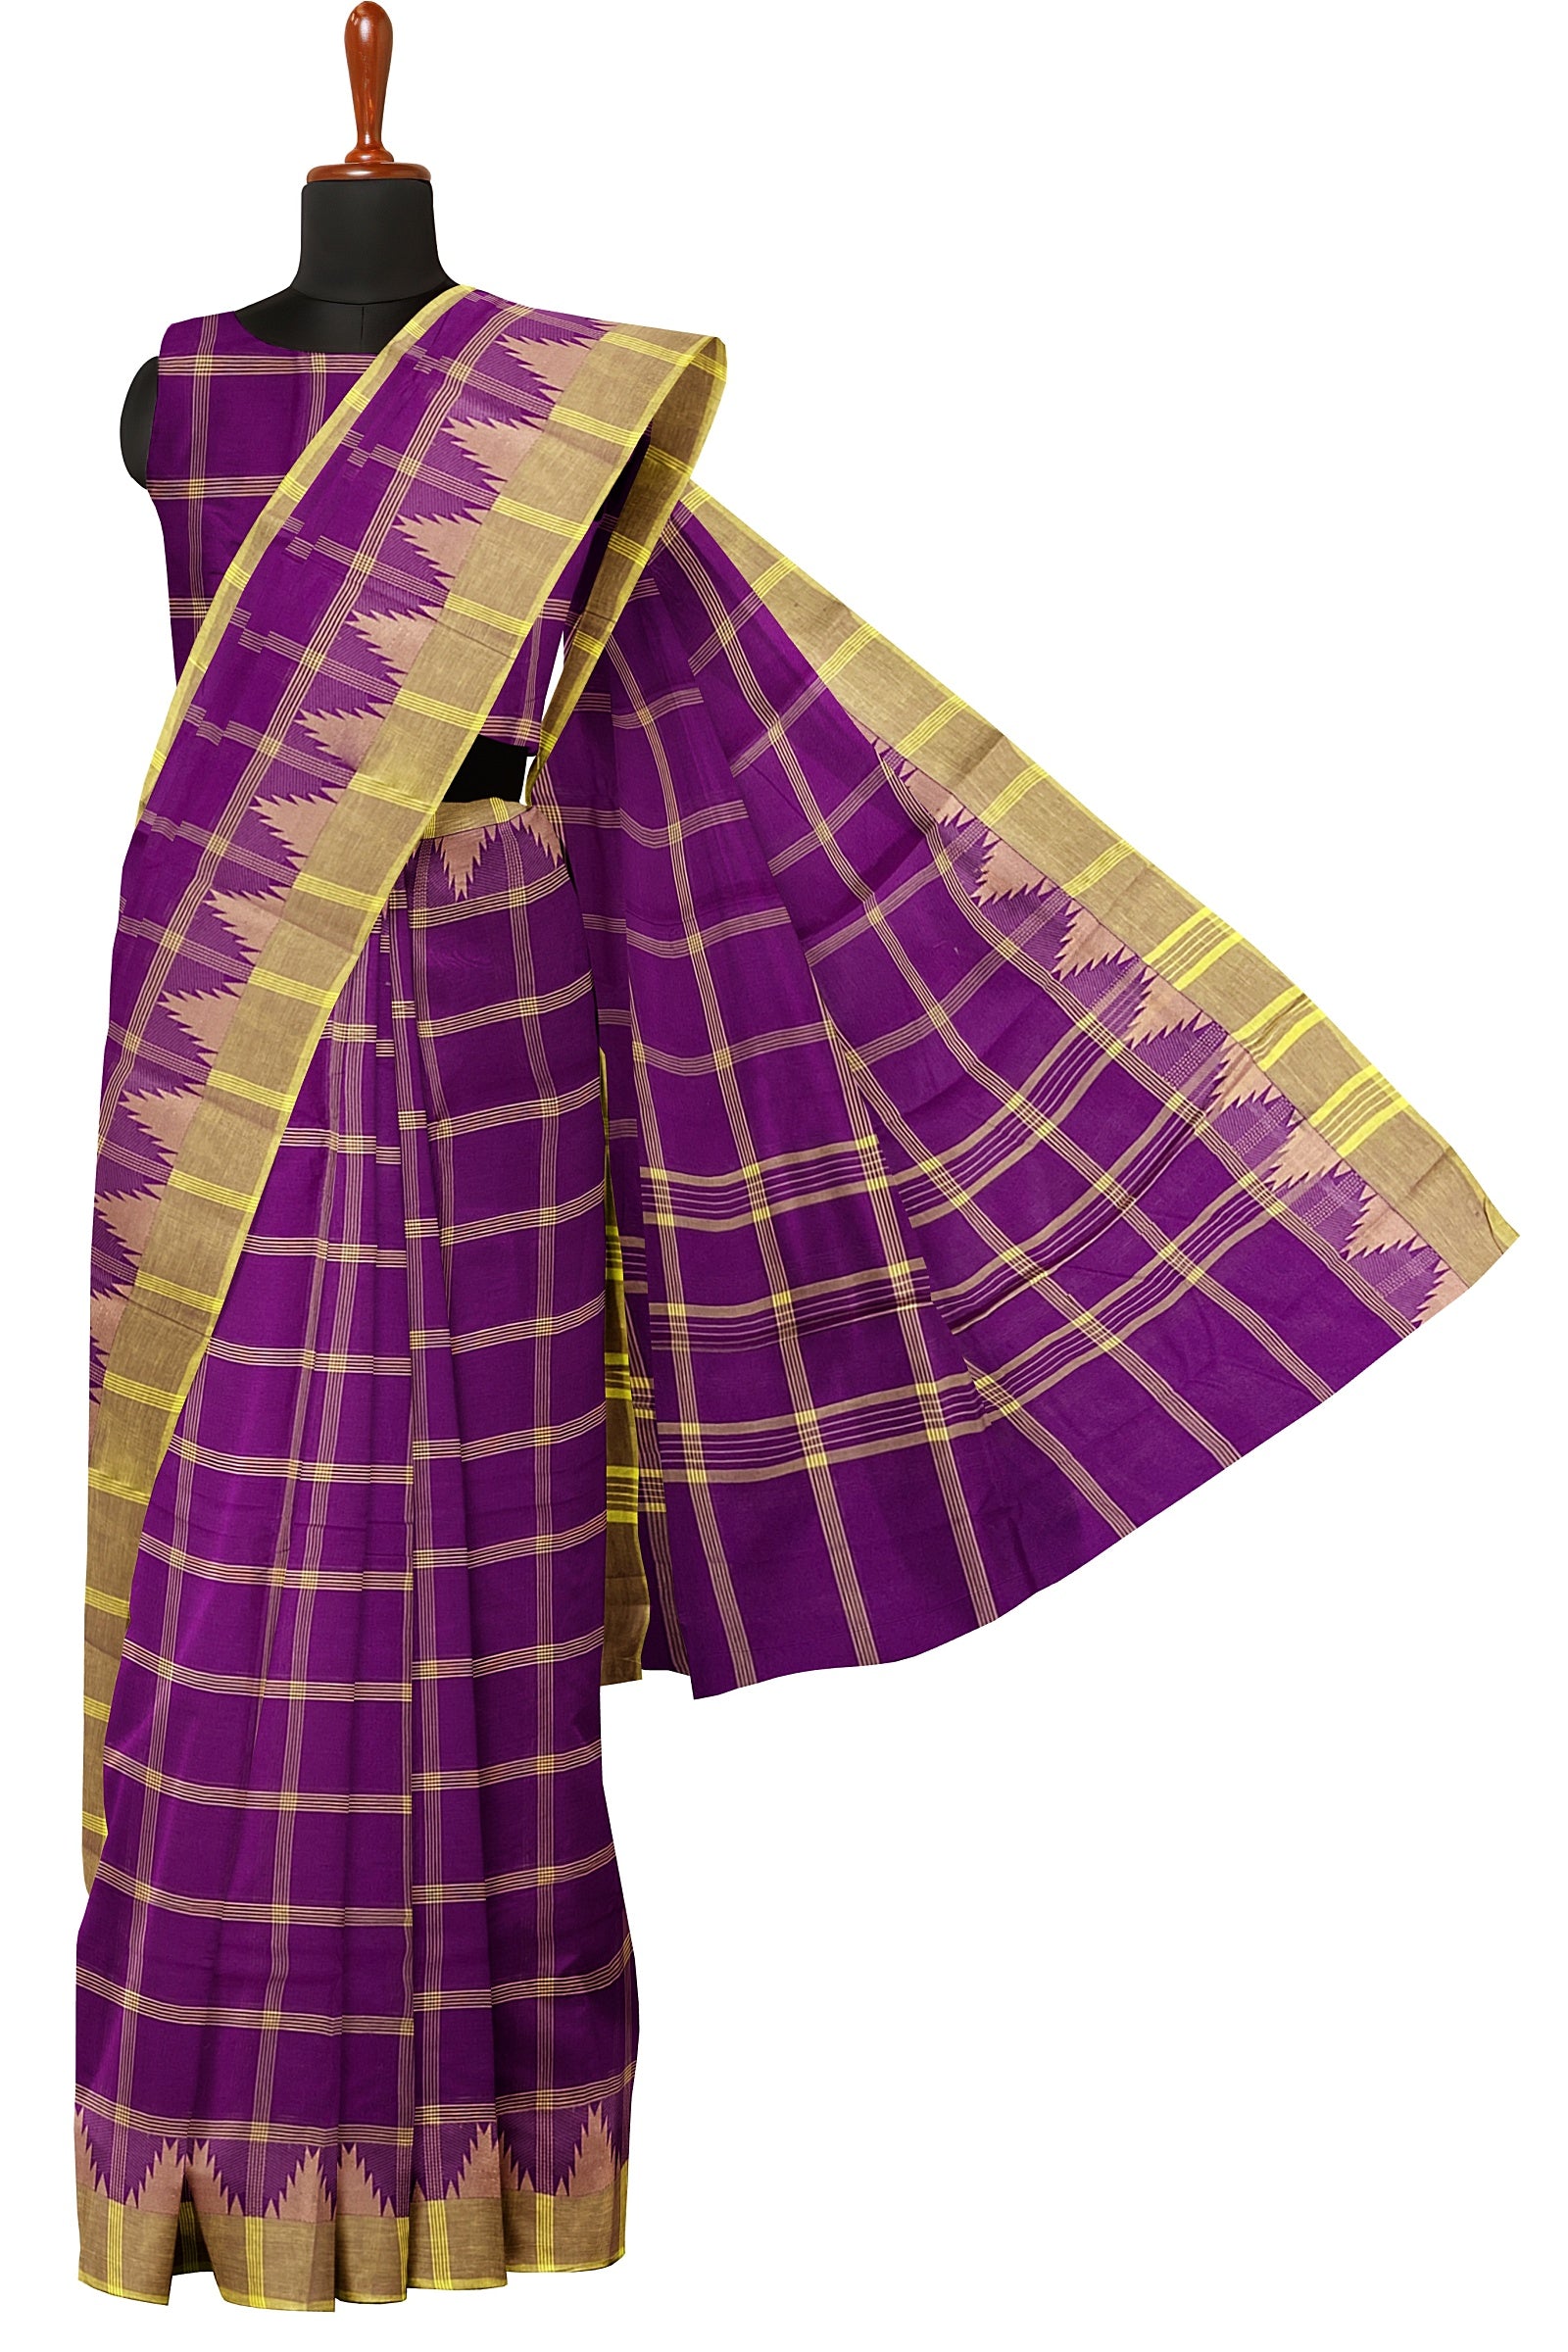 Multi-color checked chettinad cotton saree, self-border of traditional  designs & pallu of stripes